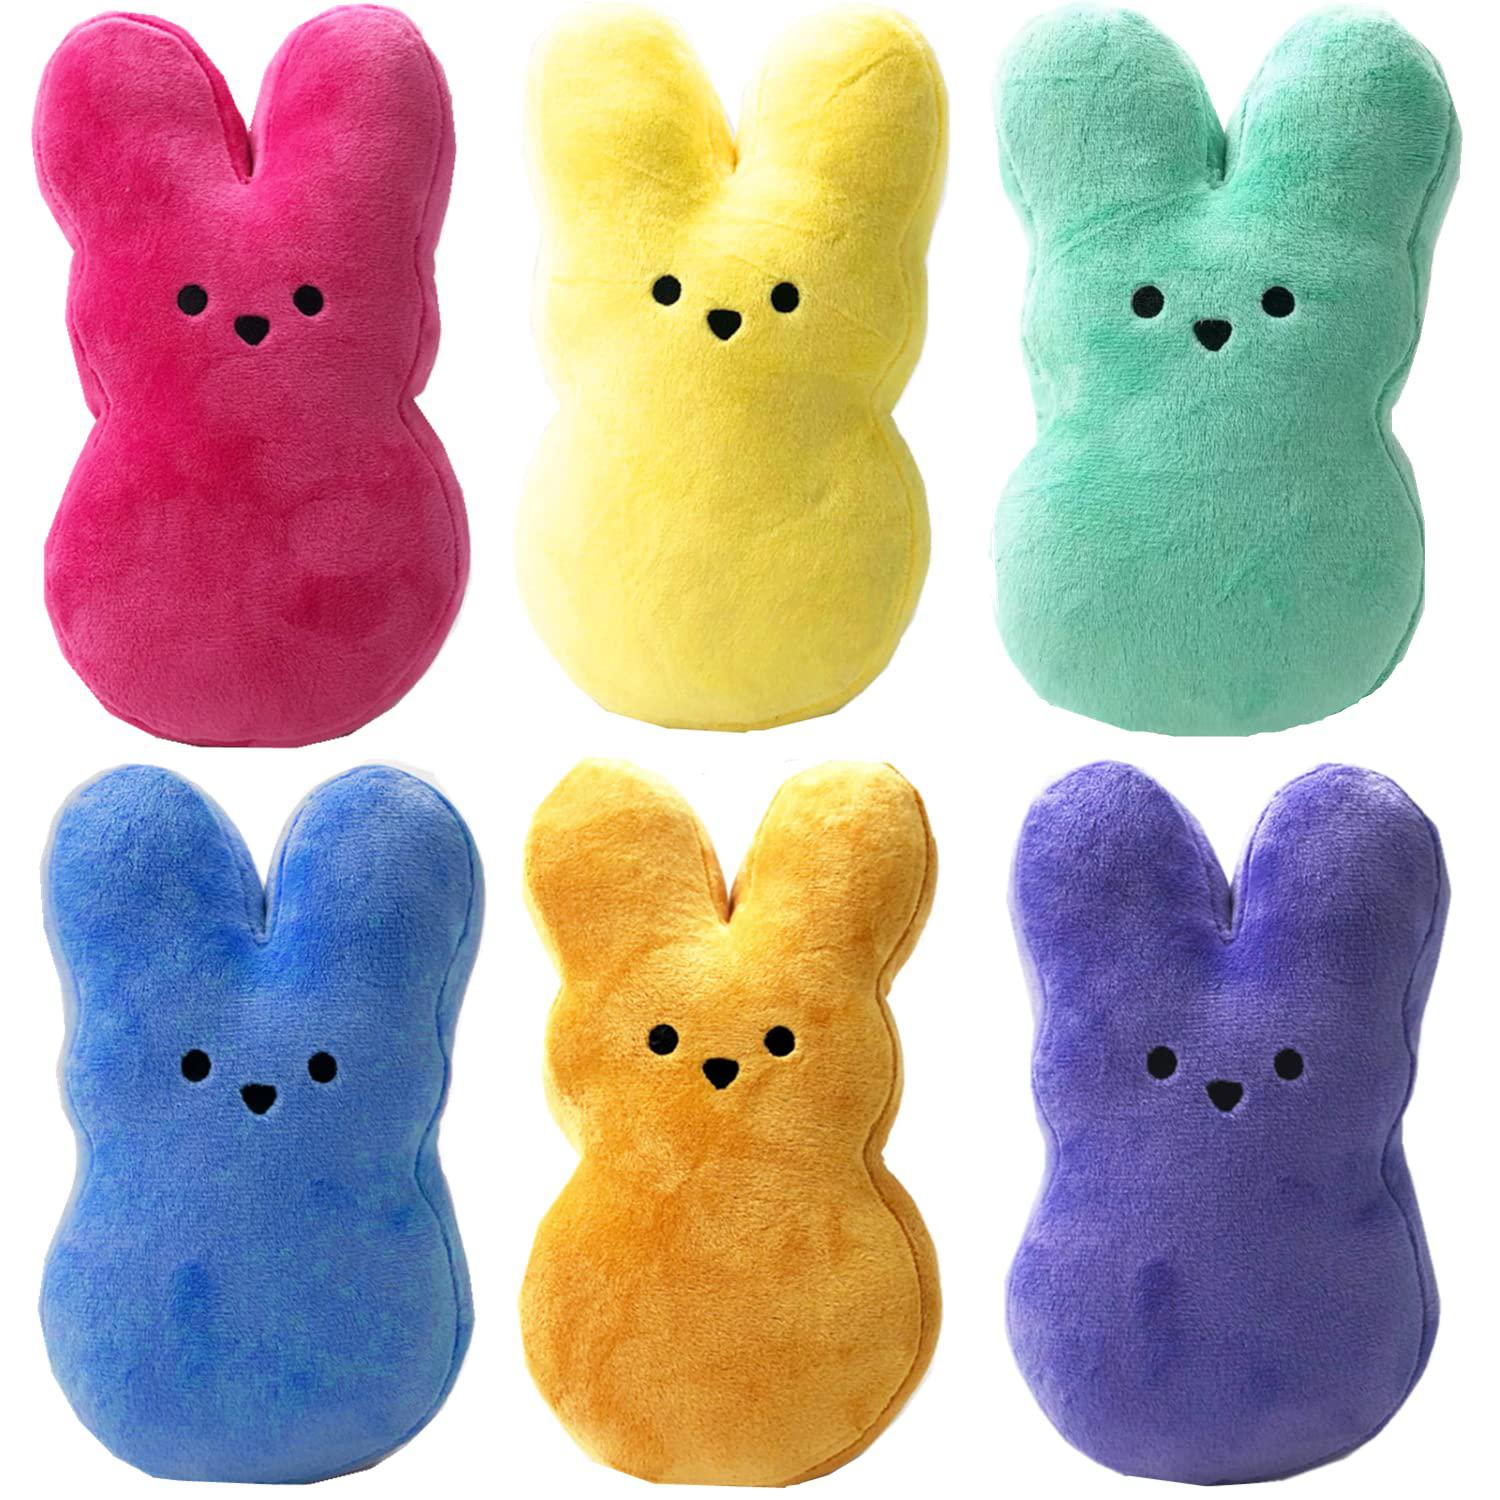 xiaohong 6pcs peep plush easter bunny stuffed animal,easter bunny doll soft plush bunnies stuffed rabbit animal toy, easter rabbit dol